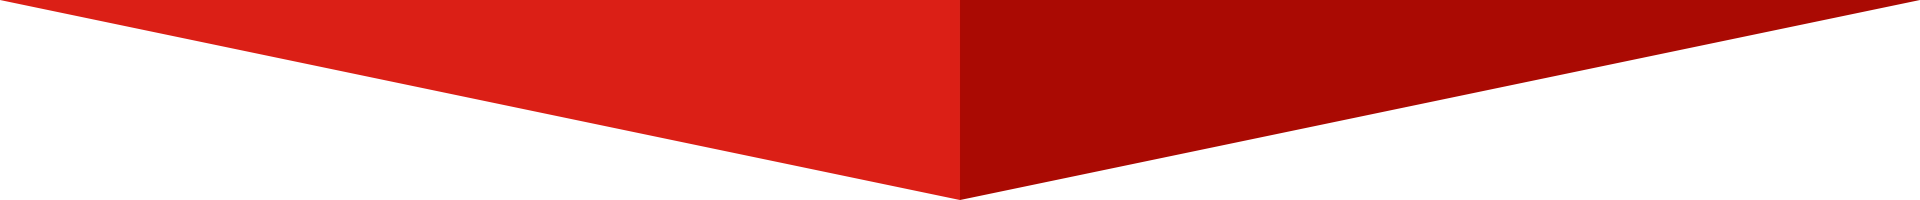 czerwona figura